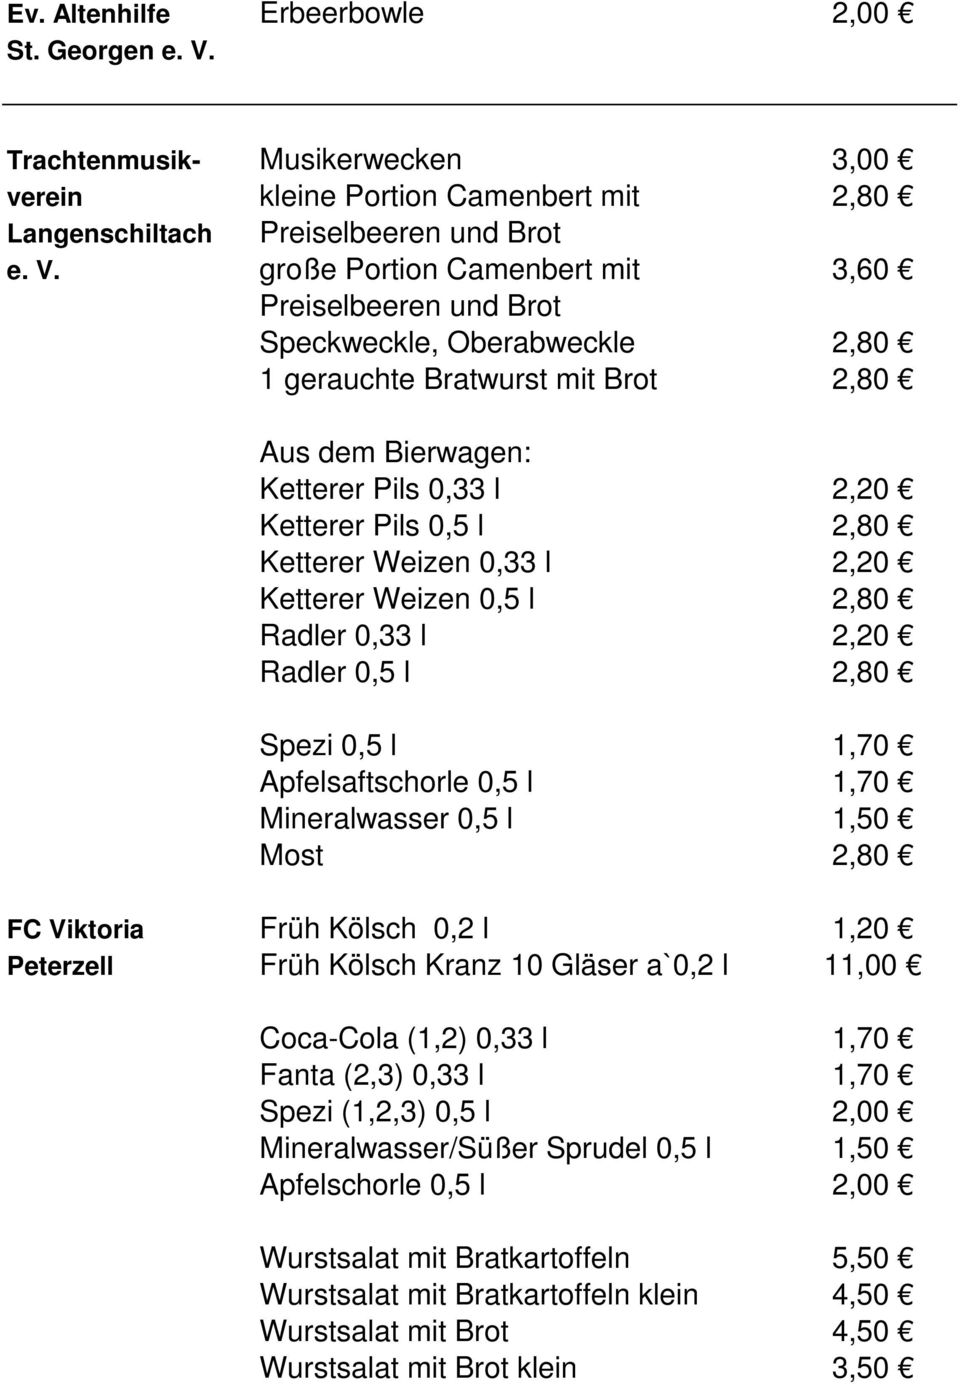 große Portion Camenbert mit 3,60 Preiselbeeren und Brot Speckweckle, Oberabweckle 2,80 1 gerauchte Bratwurst mit Brot 2,80 Aus dem Bierwagen: Ketterer Pils 0,33 l 2,20 Ketterer Pils 0,5 l 2,80